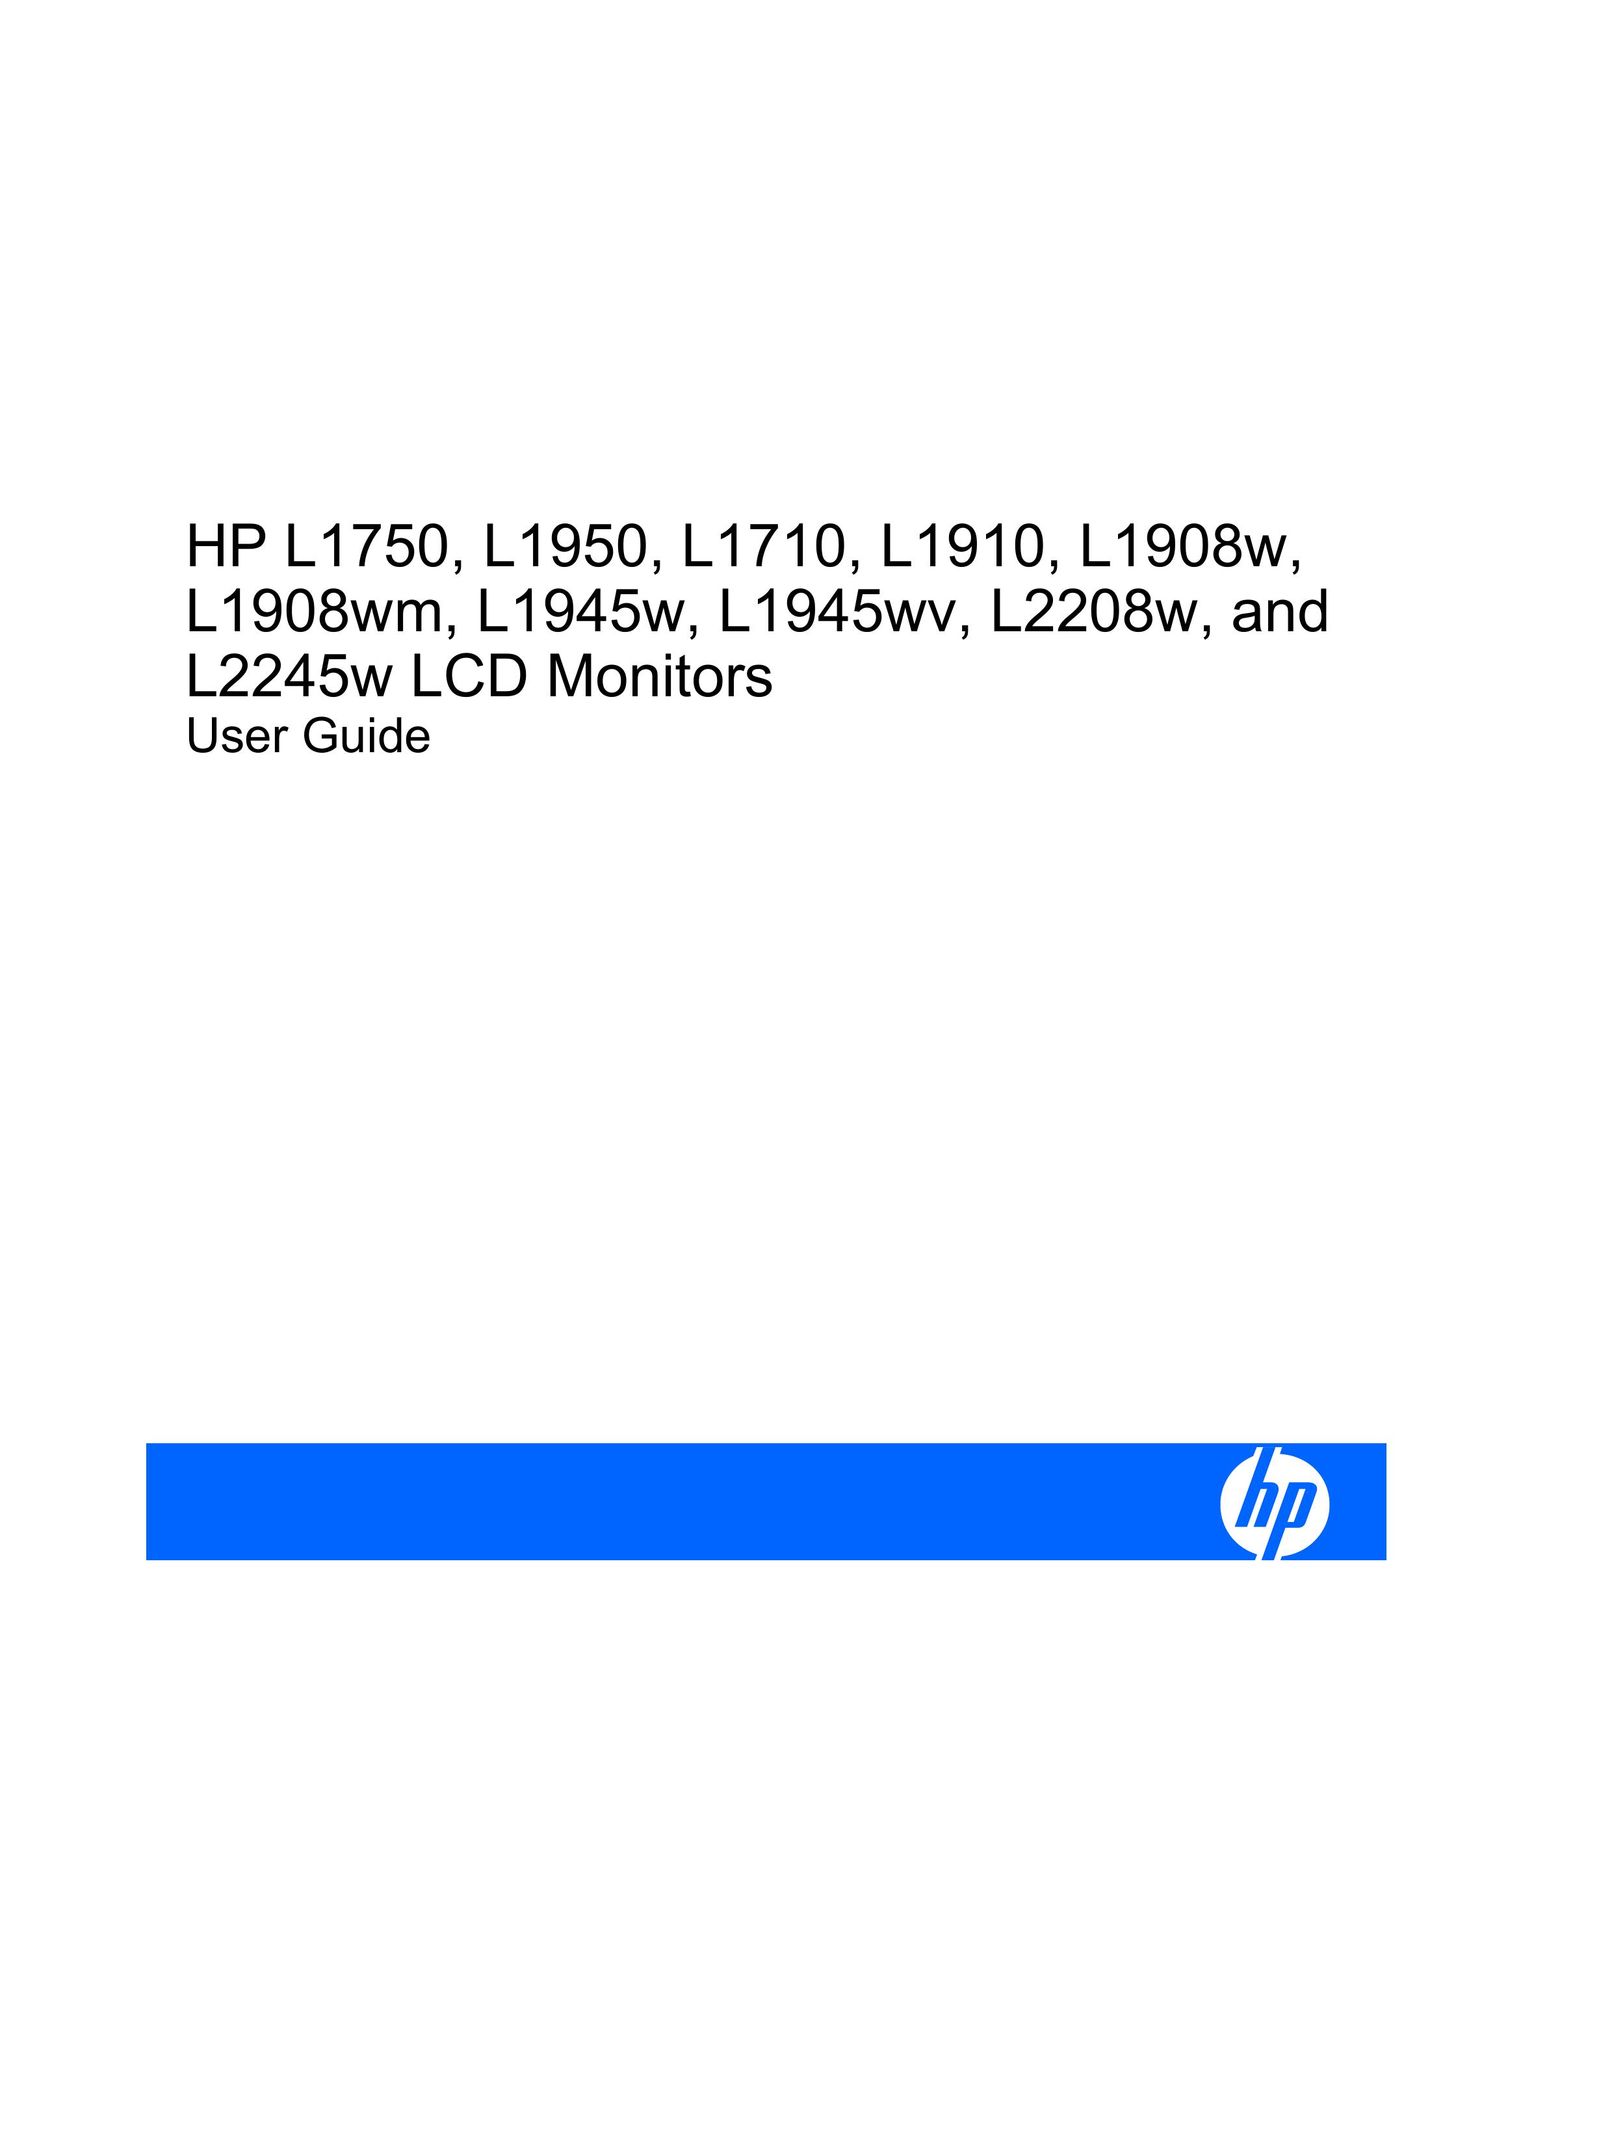 HP (Hewlett-Packard) L1908WM Flat Panel Television User Manual